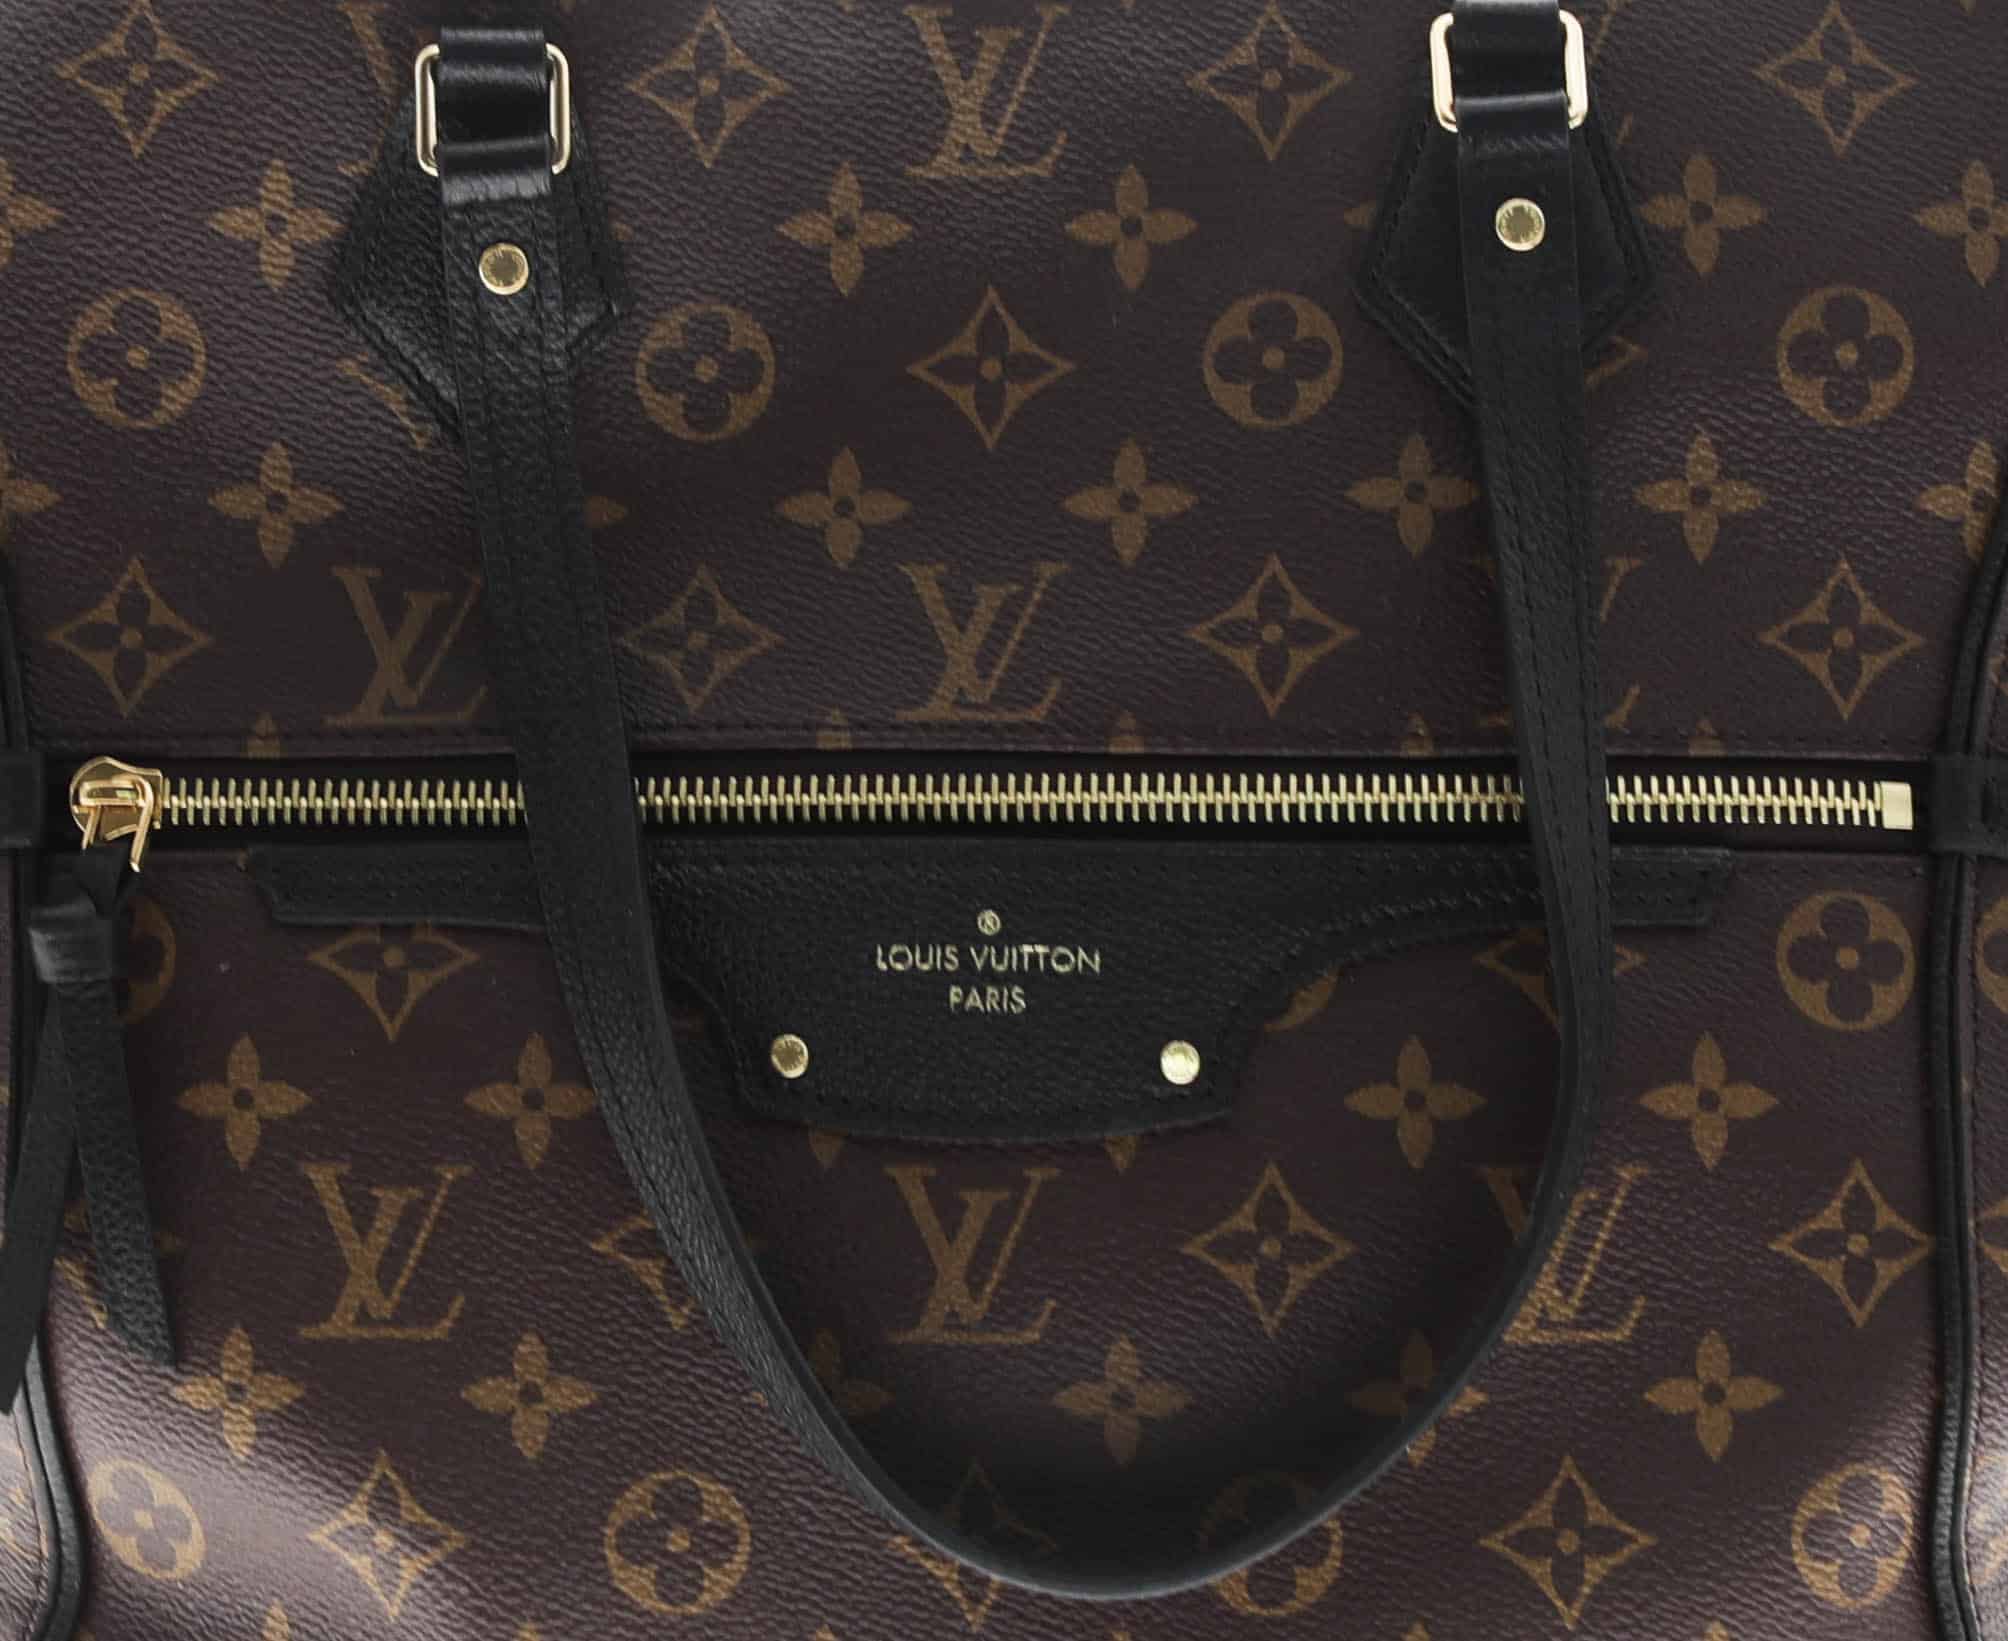 Louis Vuitton Pallas Black Monogram bag - The Vintage Contessa & Times Past | Pre-Owned Luxury ...